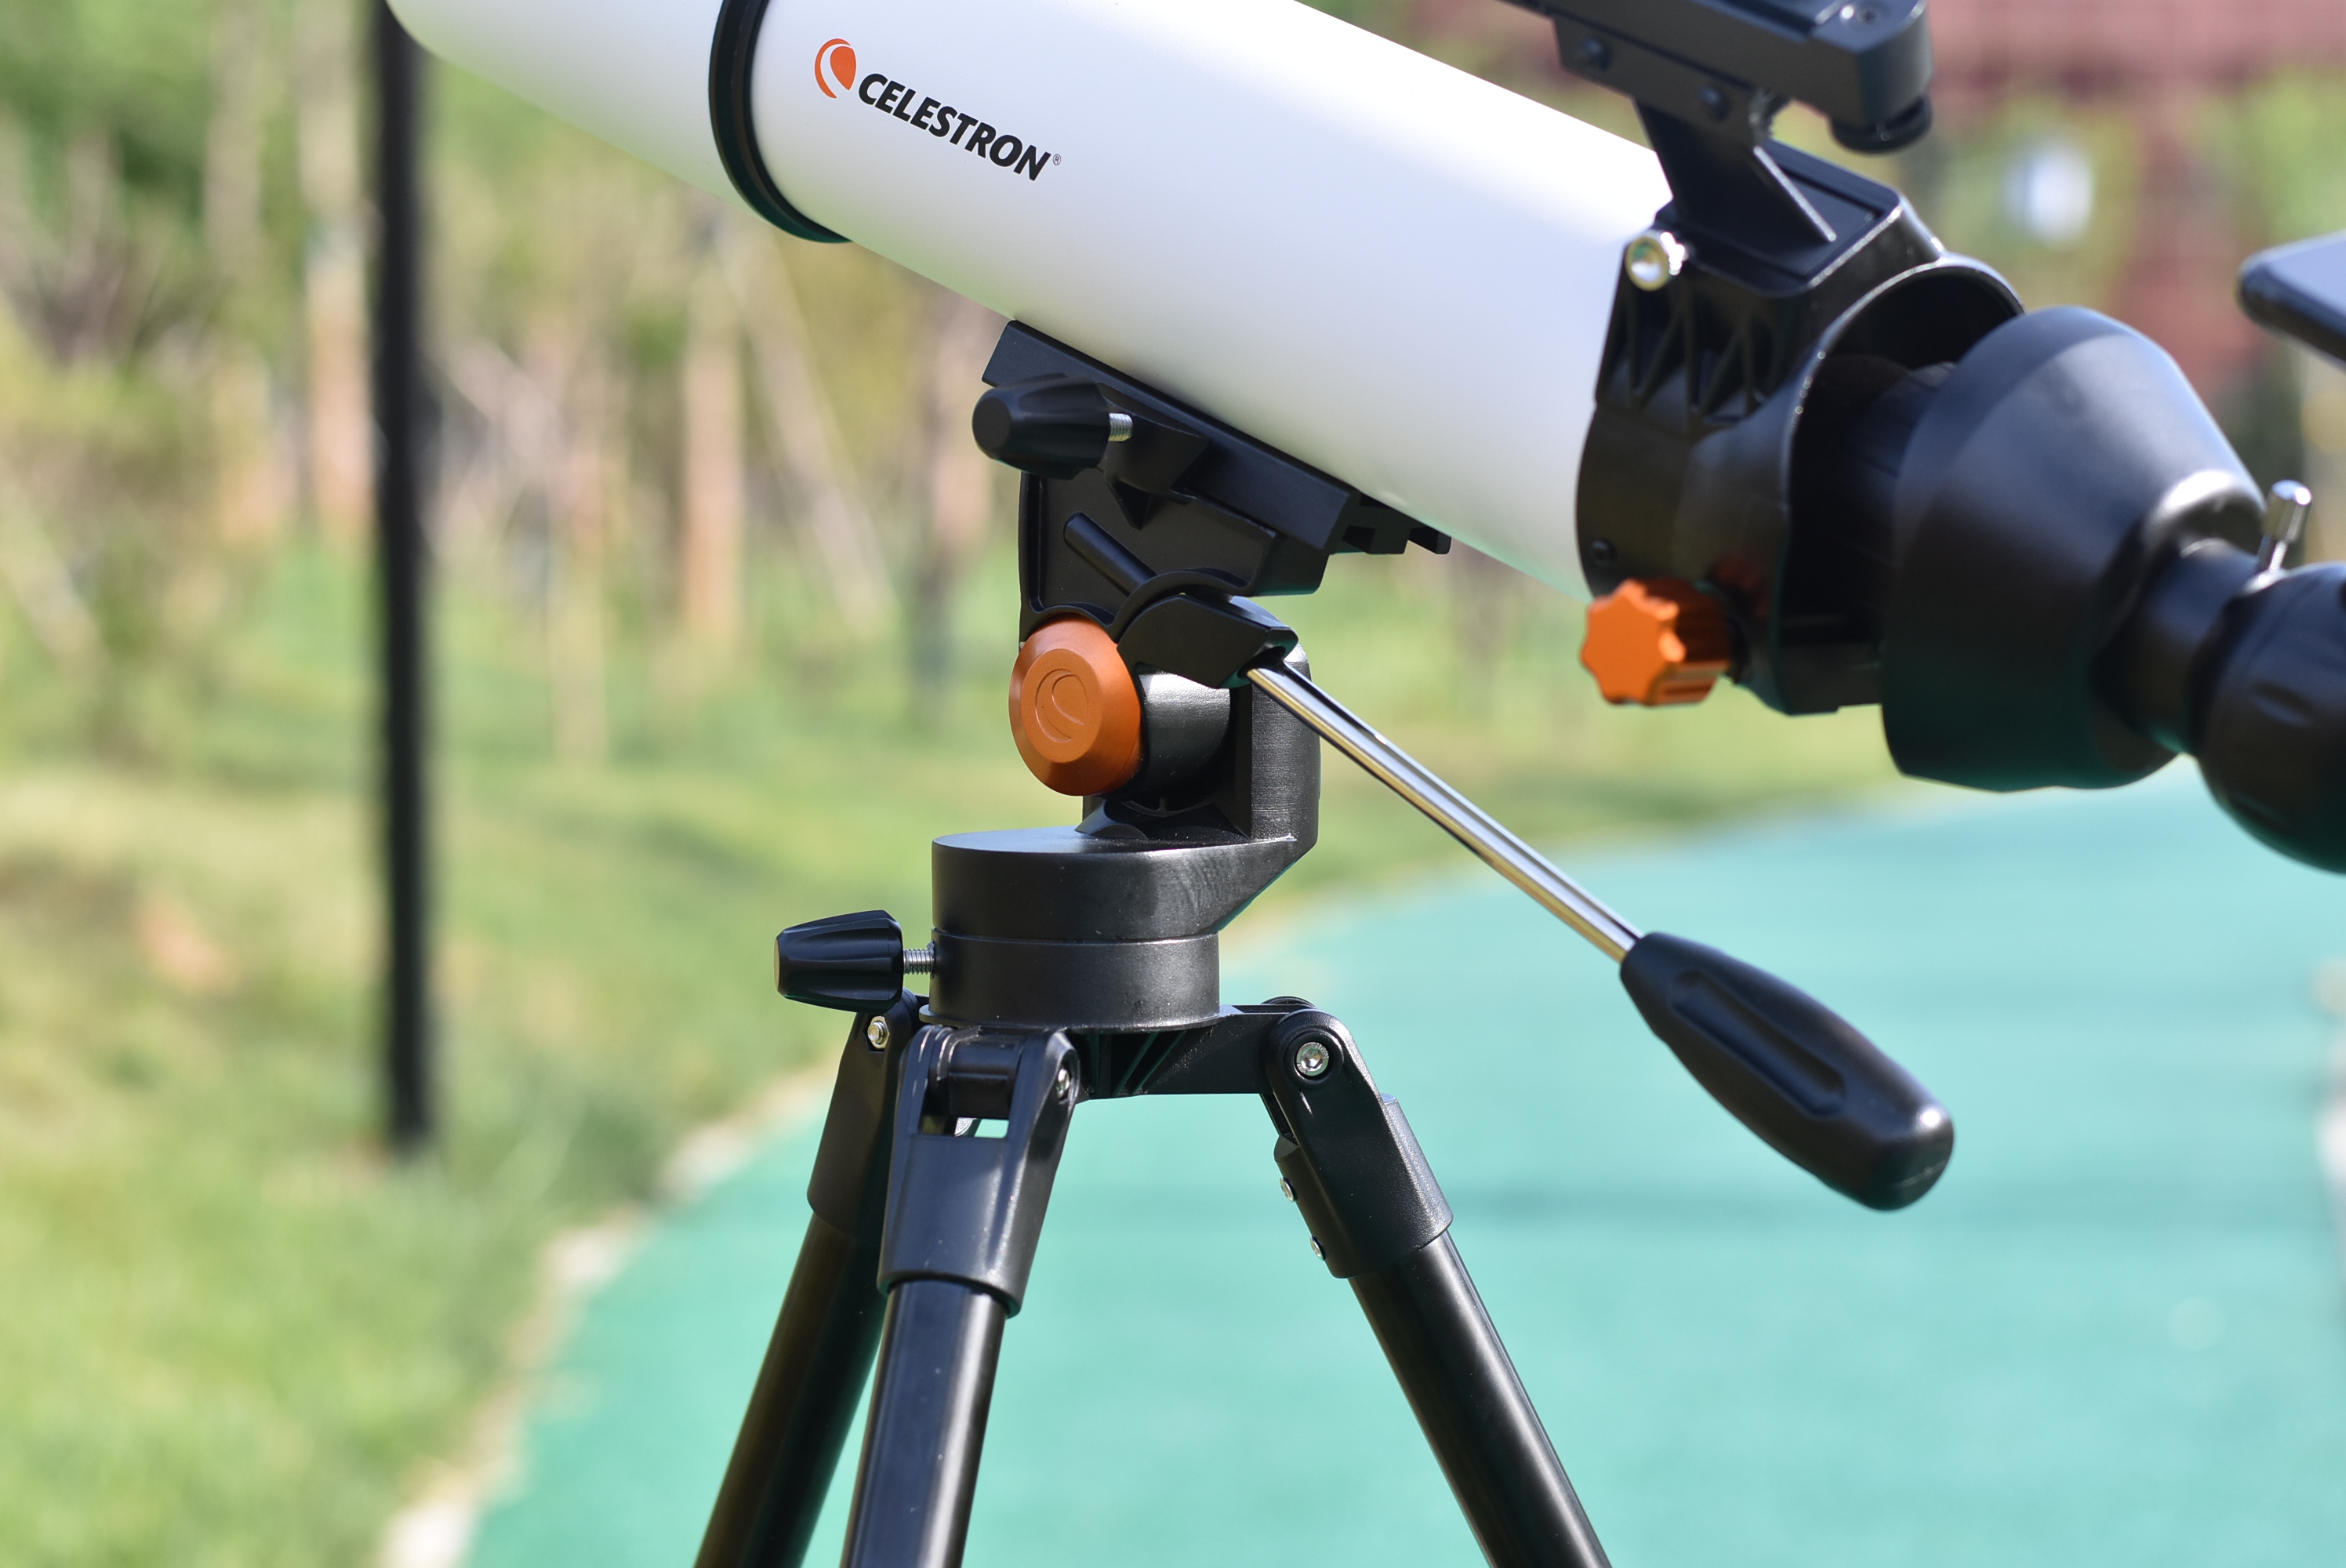 星特朗天文望远镜使用测评,一款最值得入手的专业天文望远镜